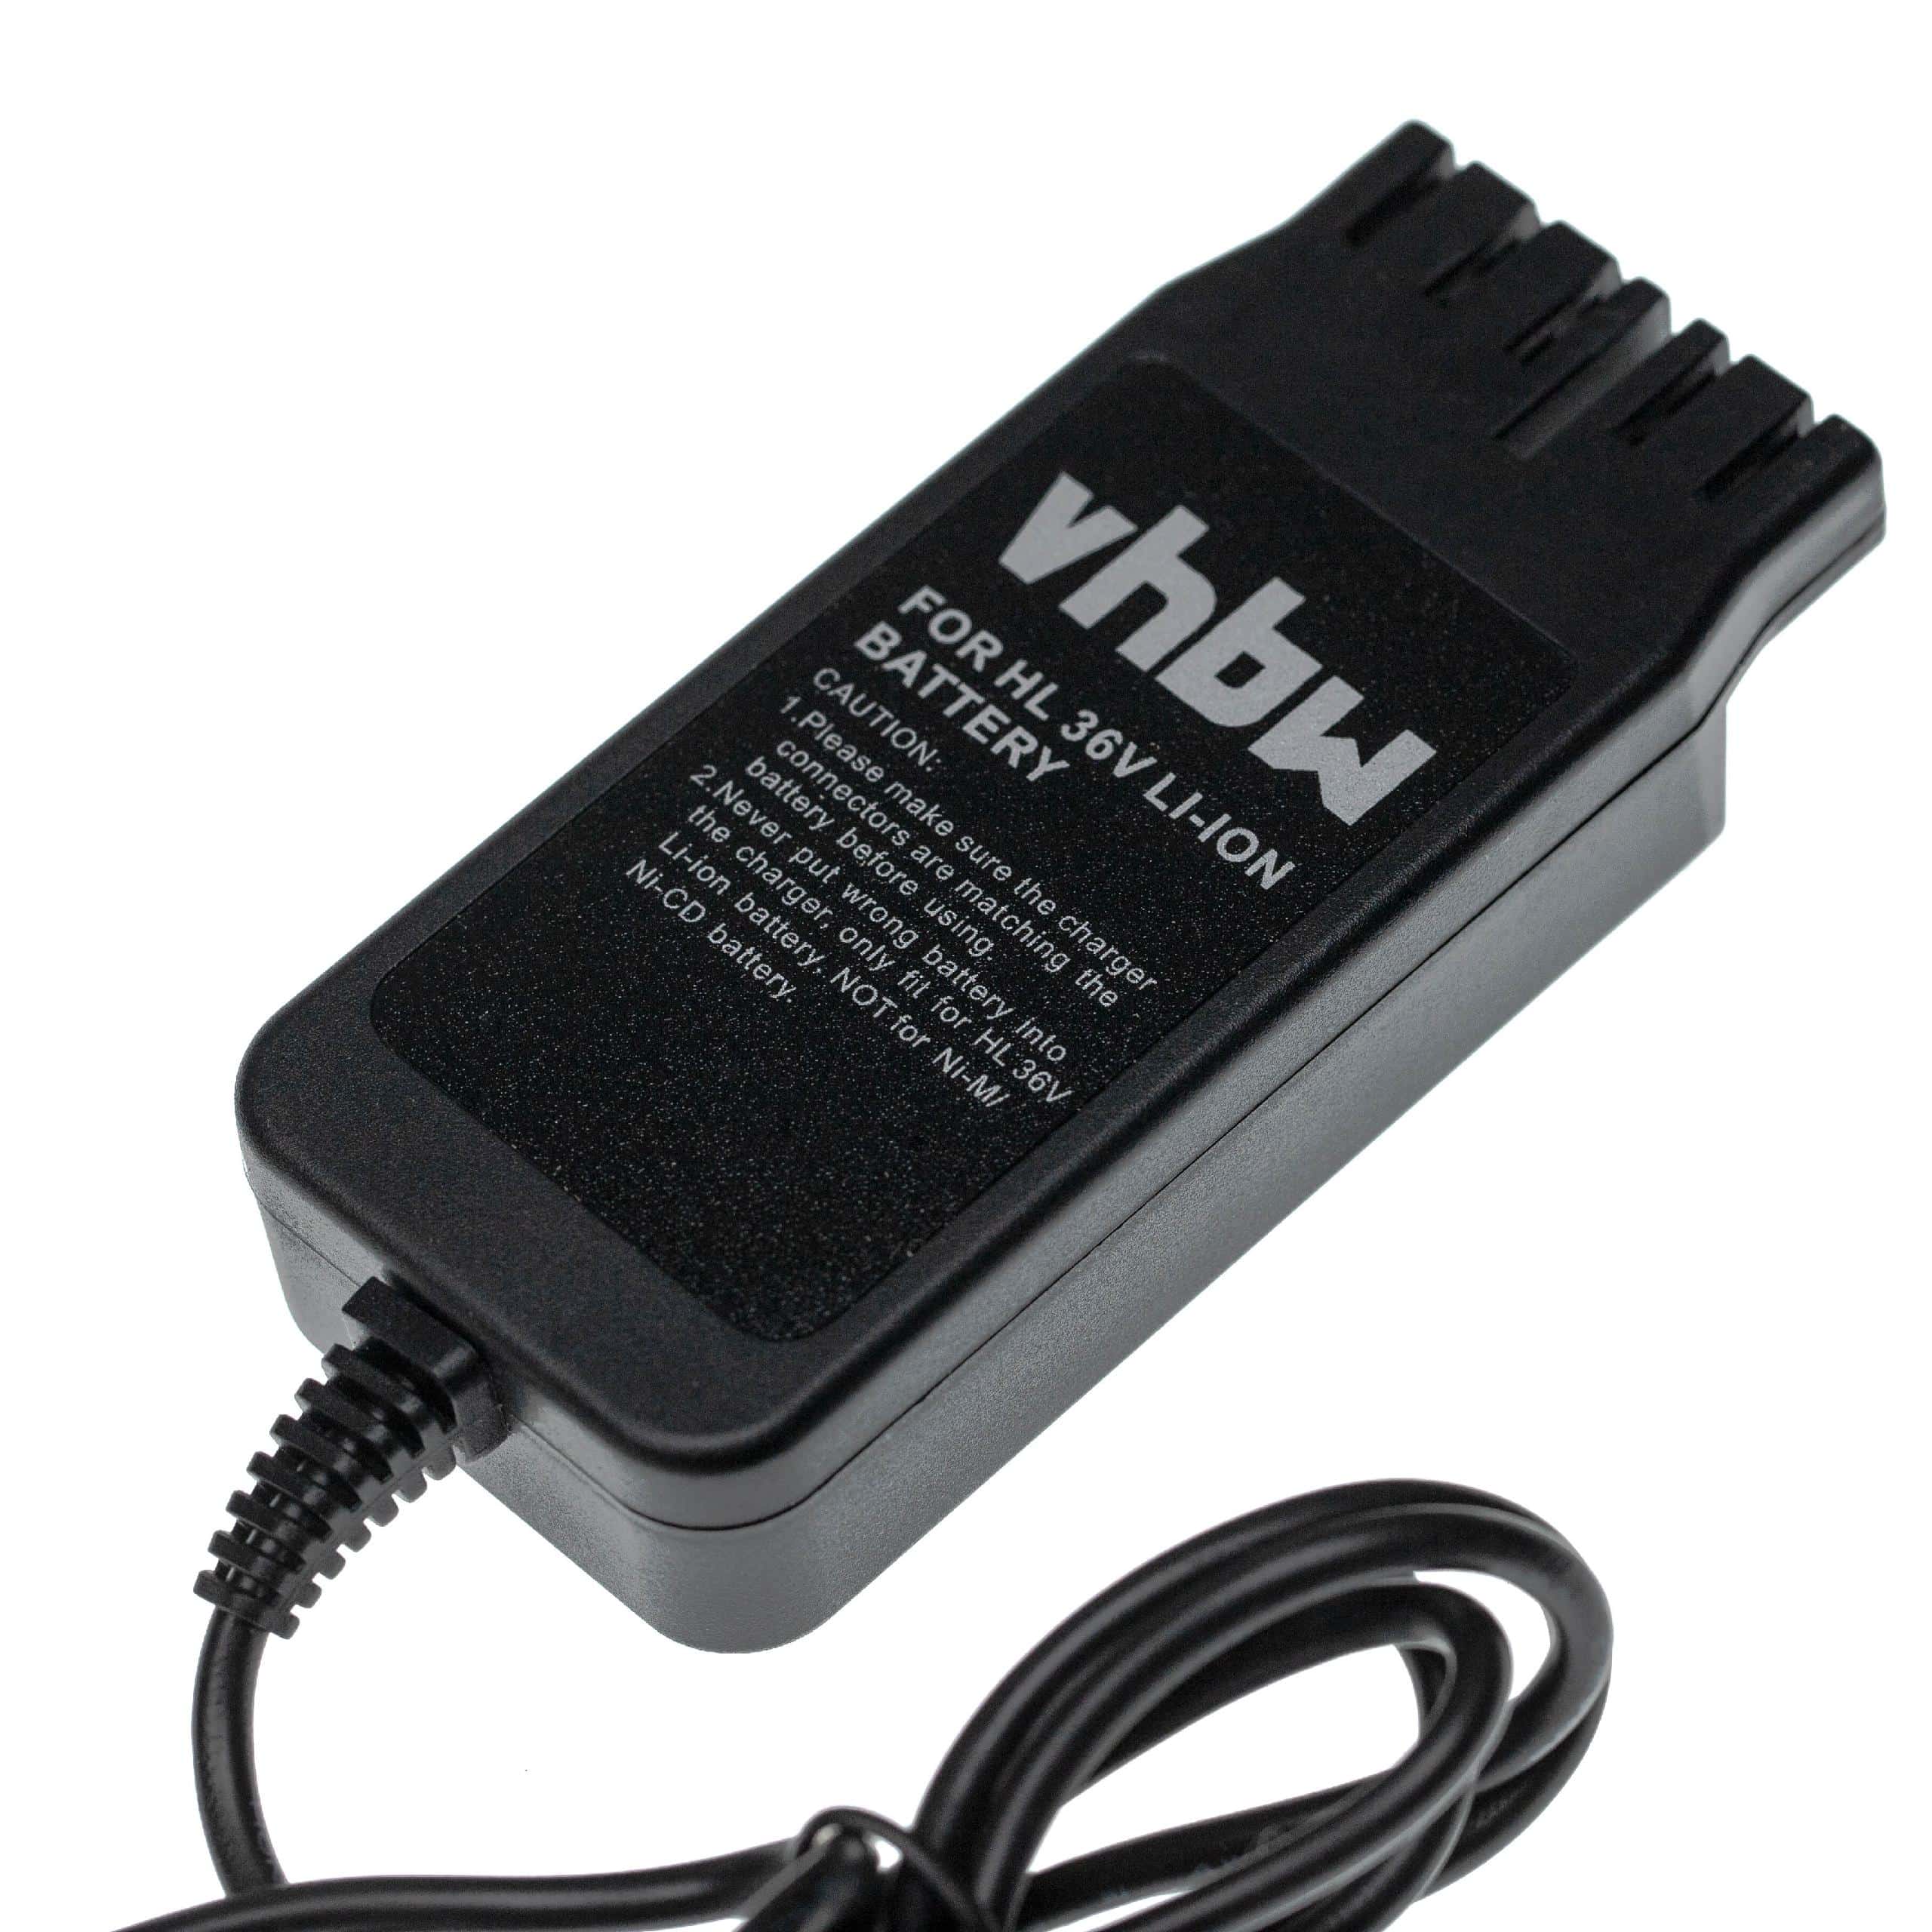 Caricabatterie + alimentatore per batterie utensile , Hilti B36 - 42 V / 0,7 A